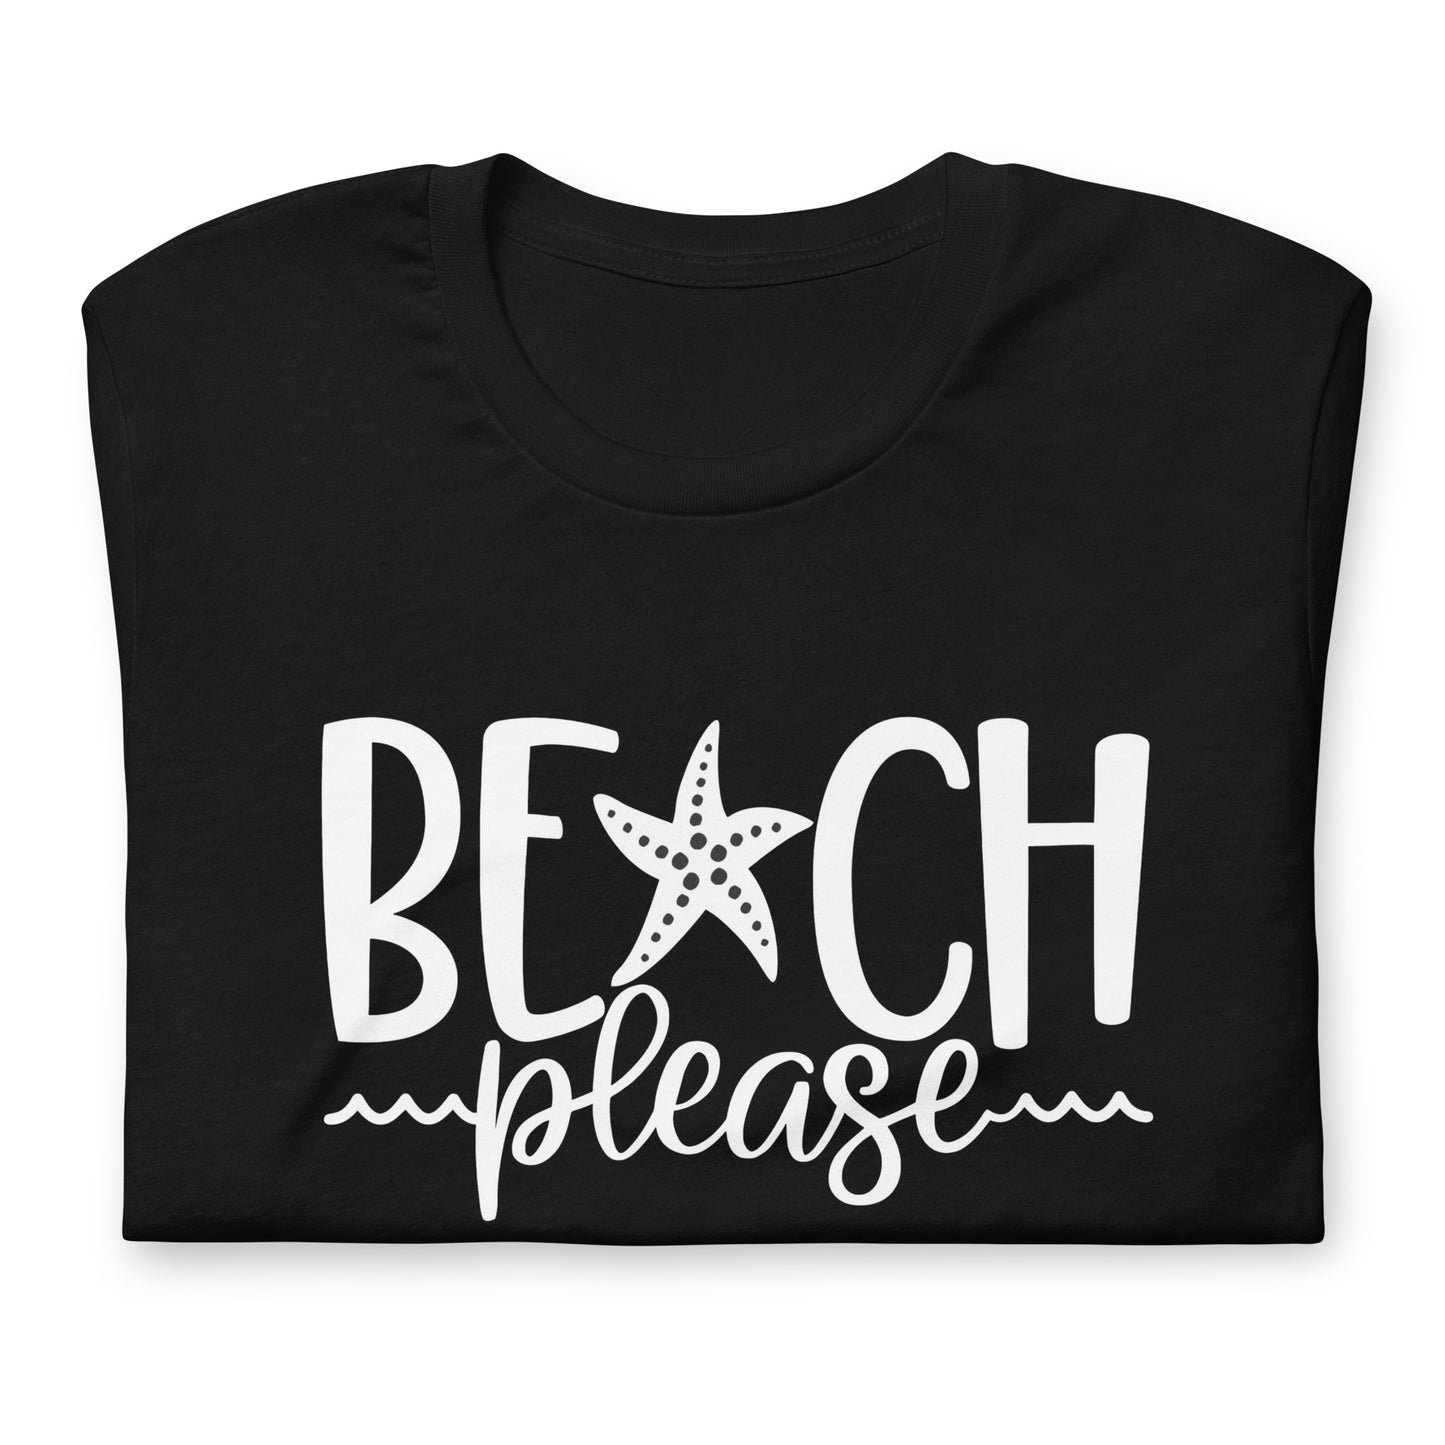 Consigue el mejor merch de El Paredón: camisetas, sudaderas y más con estilo único. Compra ahora: Playera de Beach Please